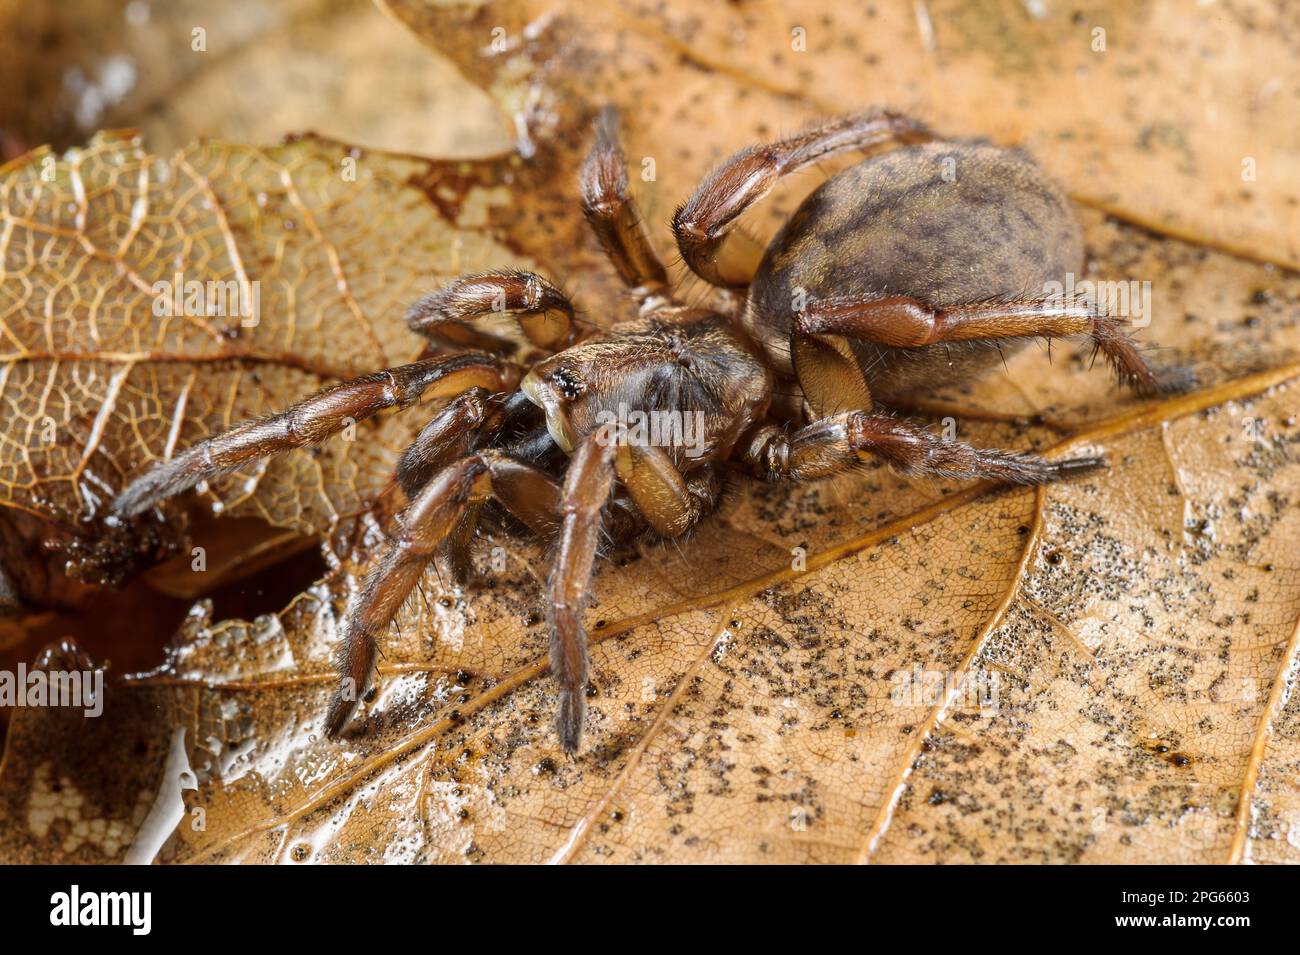 Trampilla Spider (Nemesia sp.) Nueva especie no descrita, adulta, en hojarasca, Italia Foto de stock